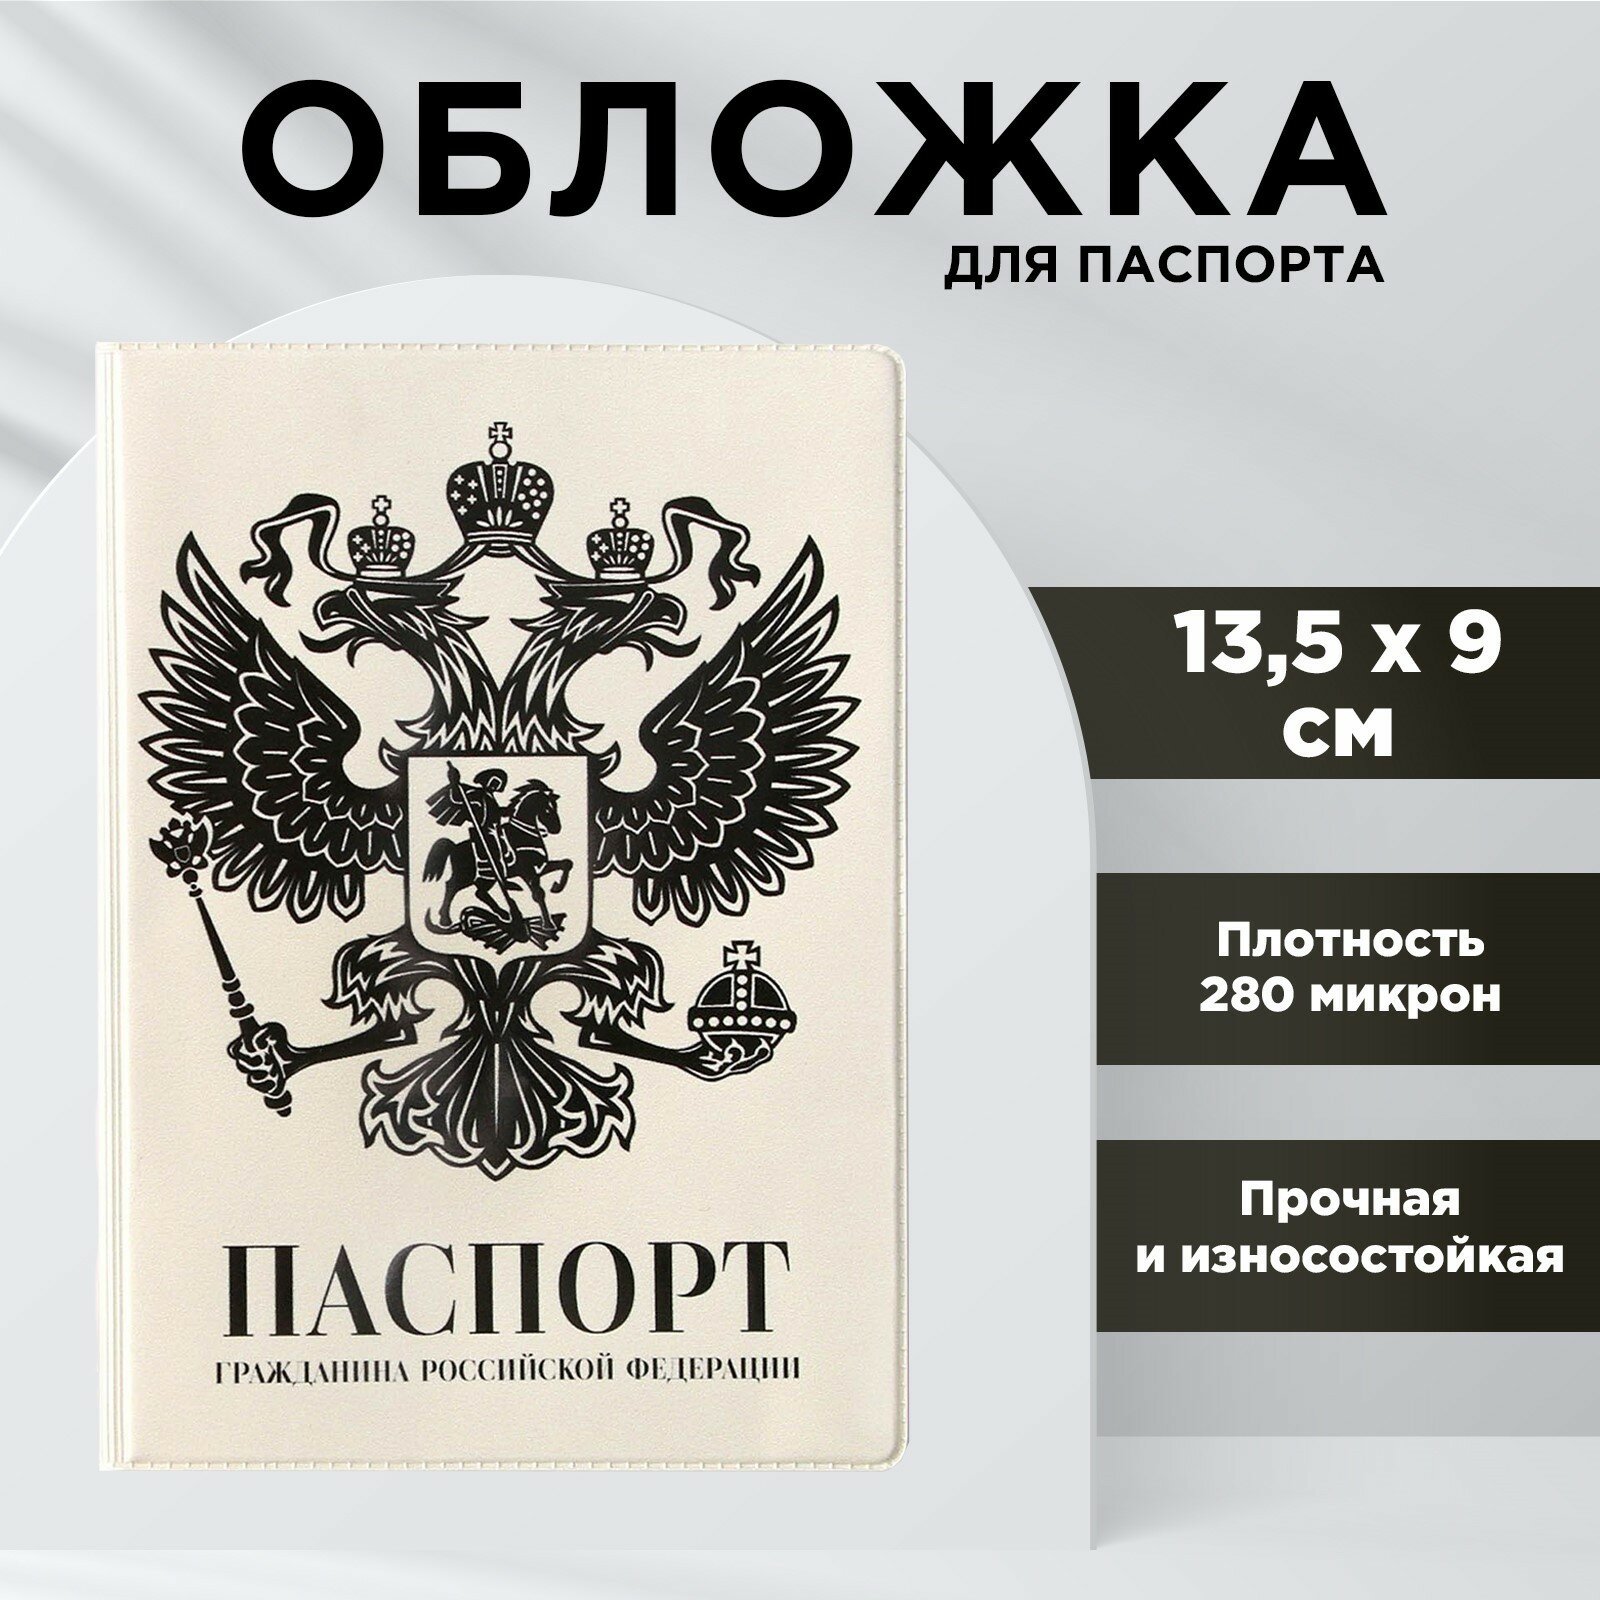 Обложка для паспорта NAZAMOK Обложка на паспорт